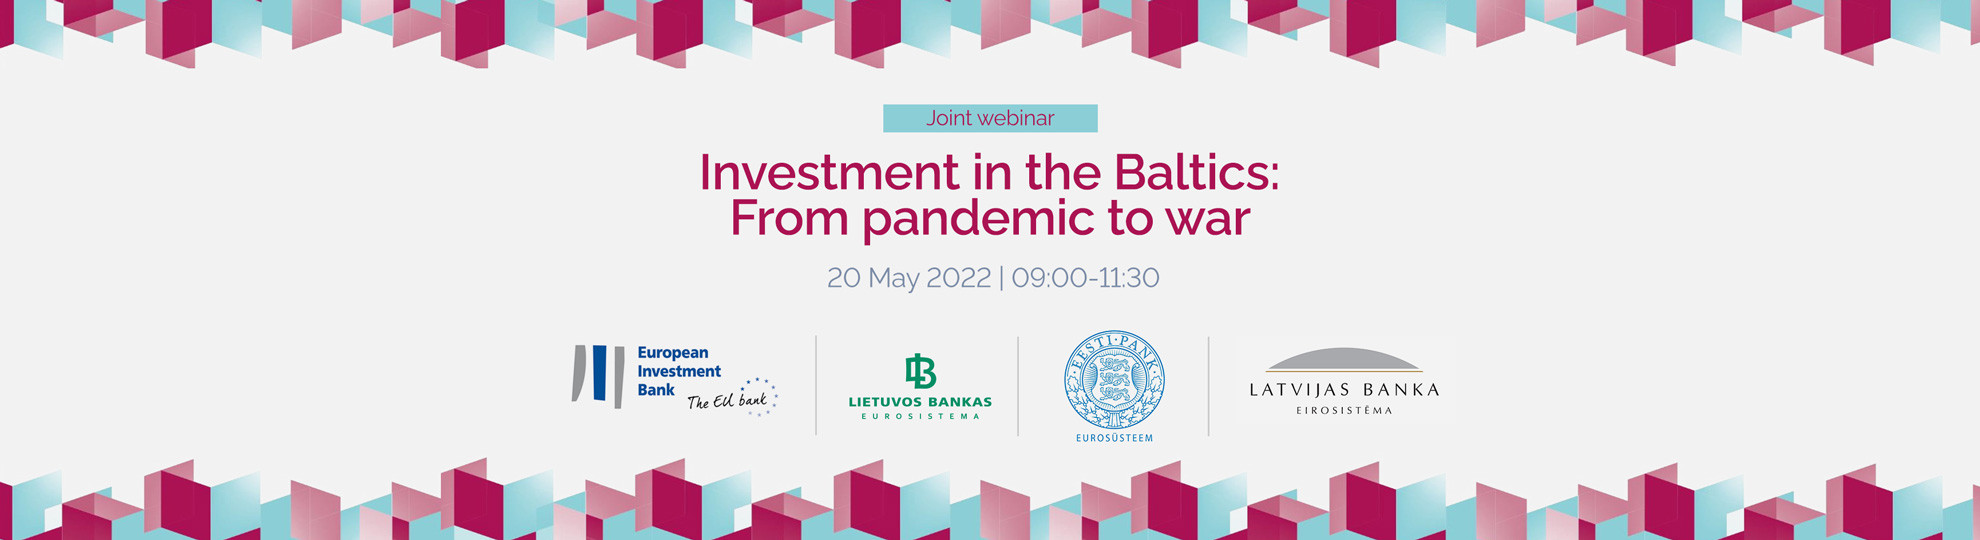 Vebinārs par ekonomiskajām un investīciju tendencēm Baltijas valstīs